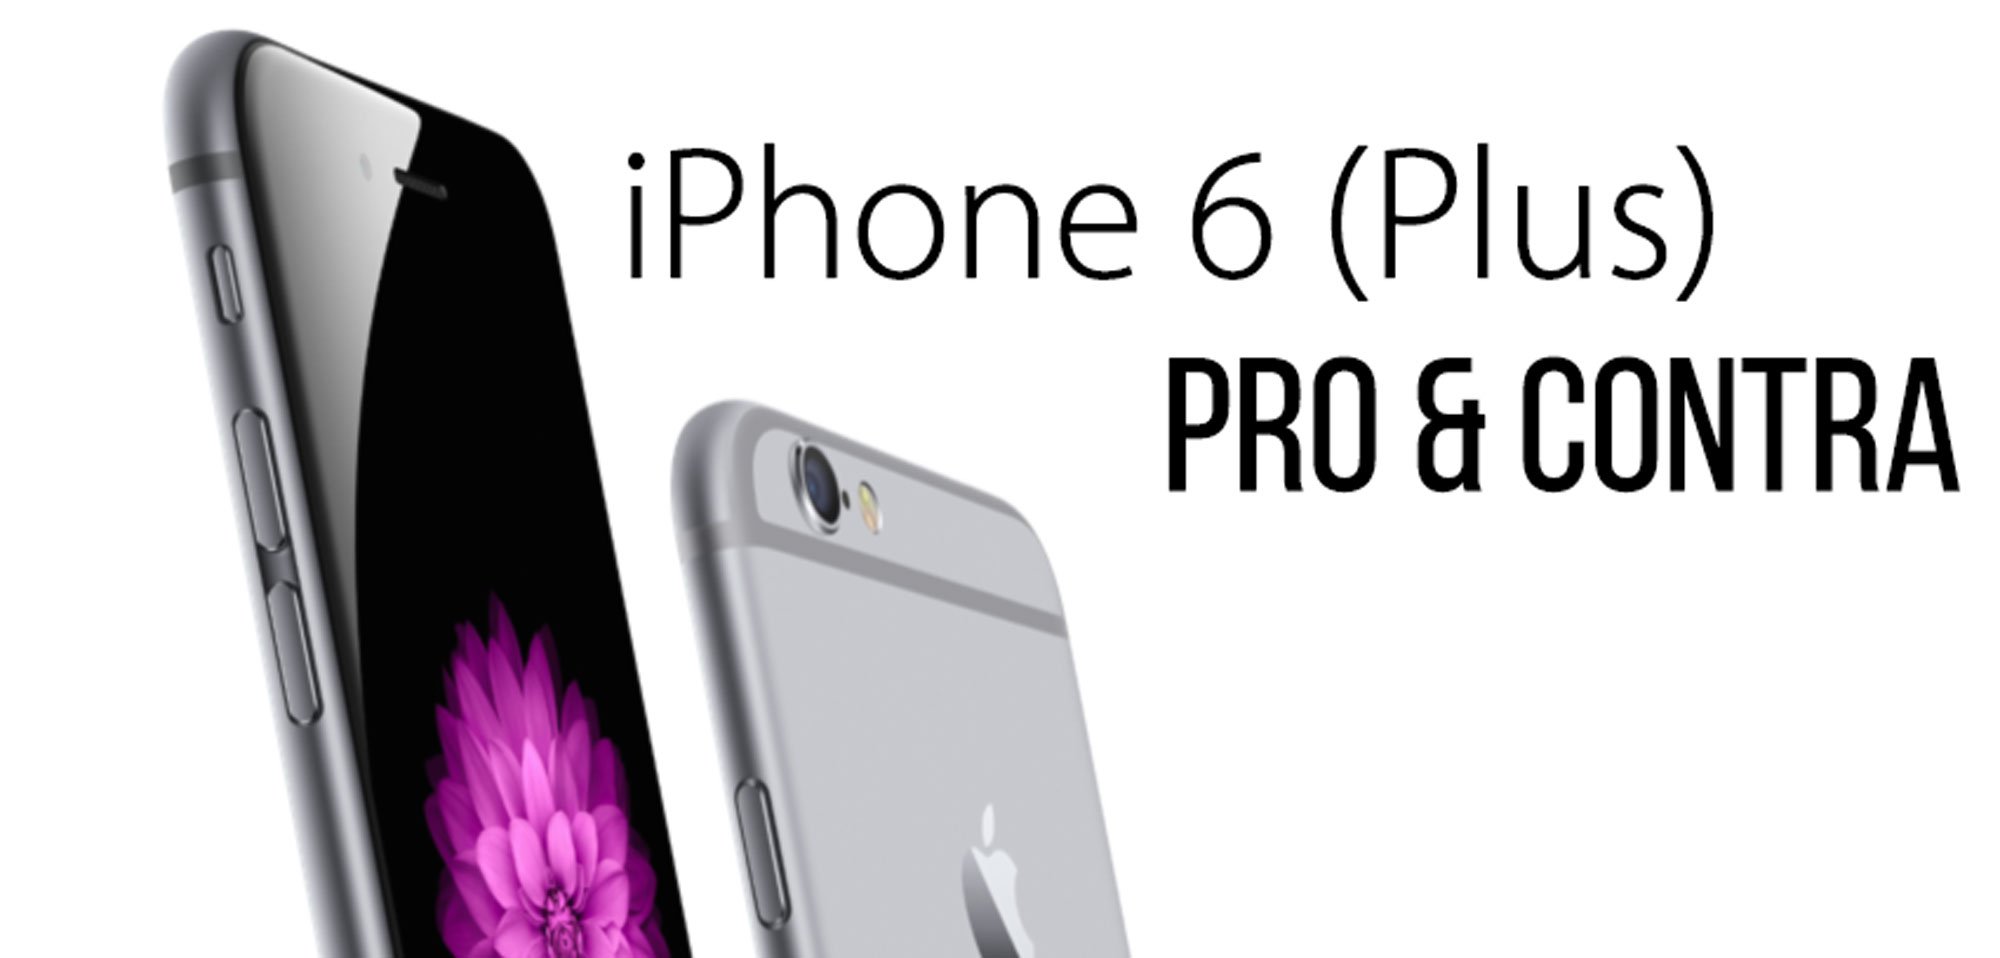 Pro & Contra iPhone 6 (Plus): Gründe dafür & dagegen! 1